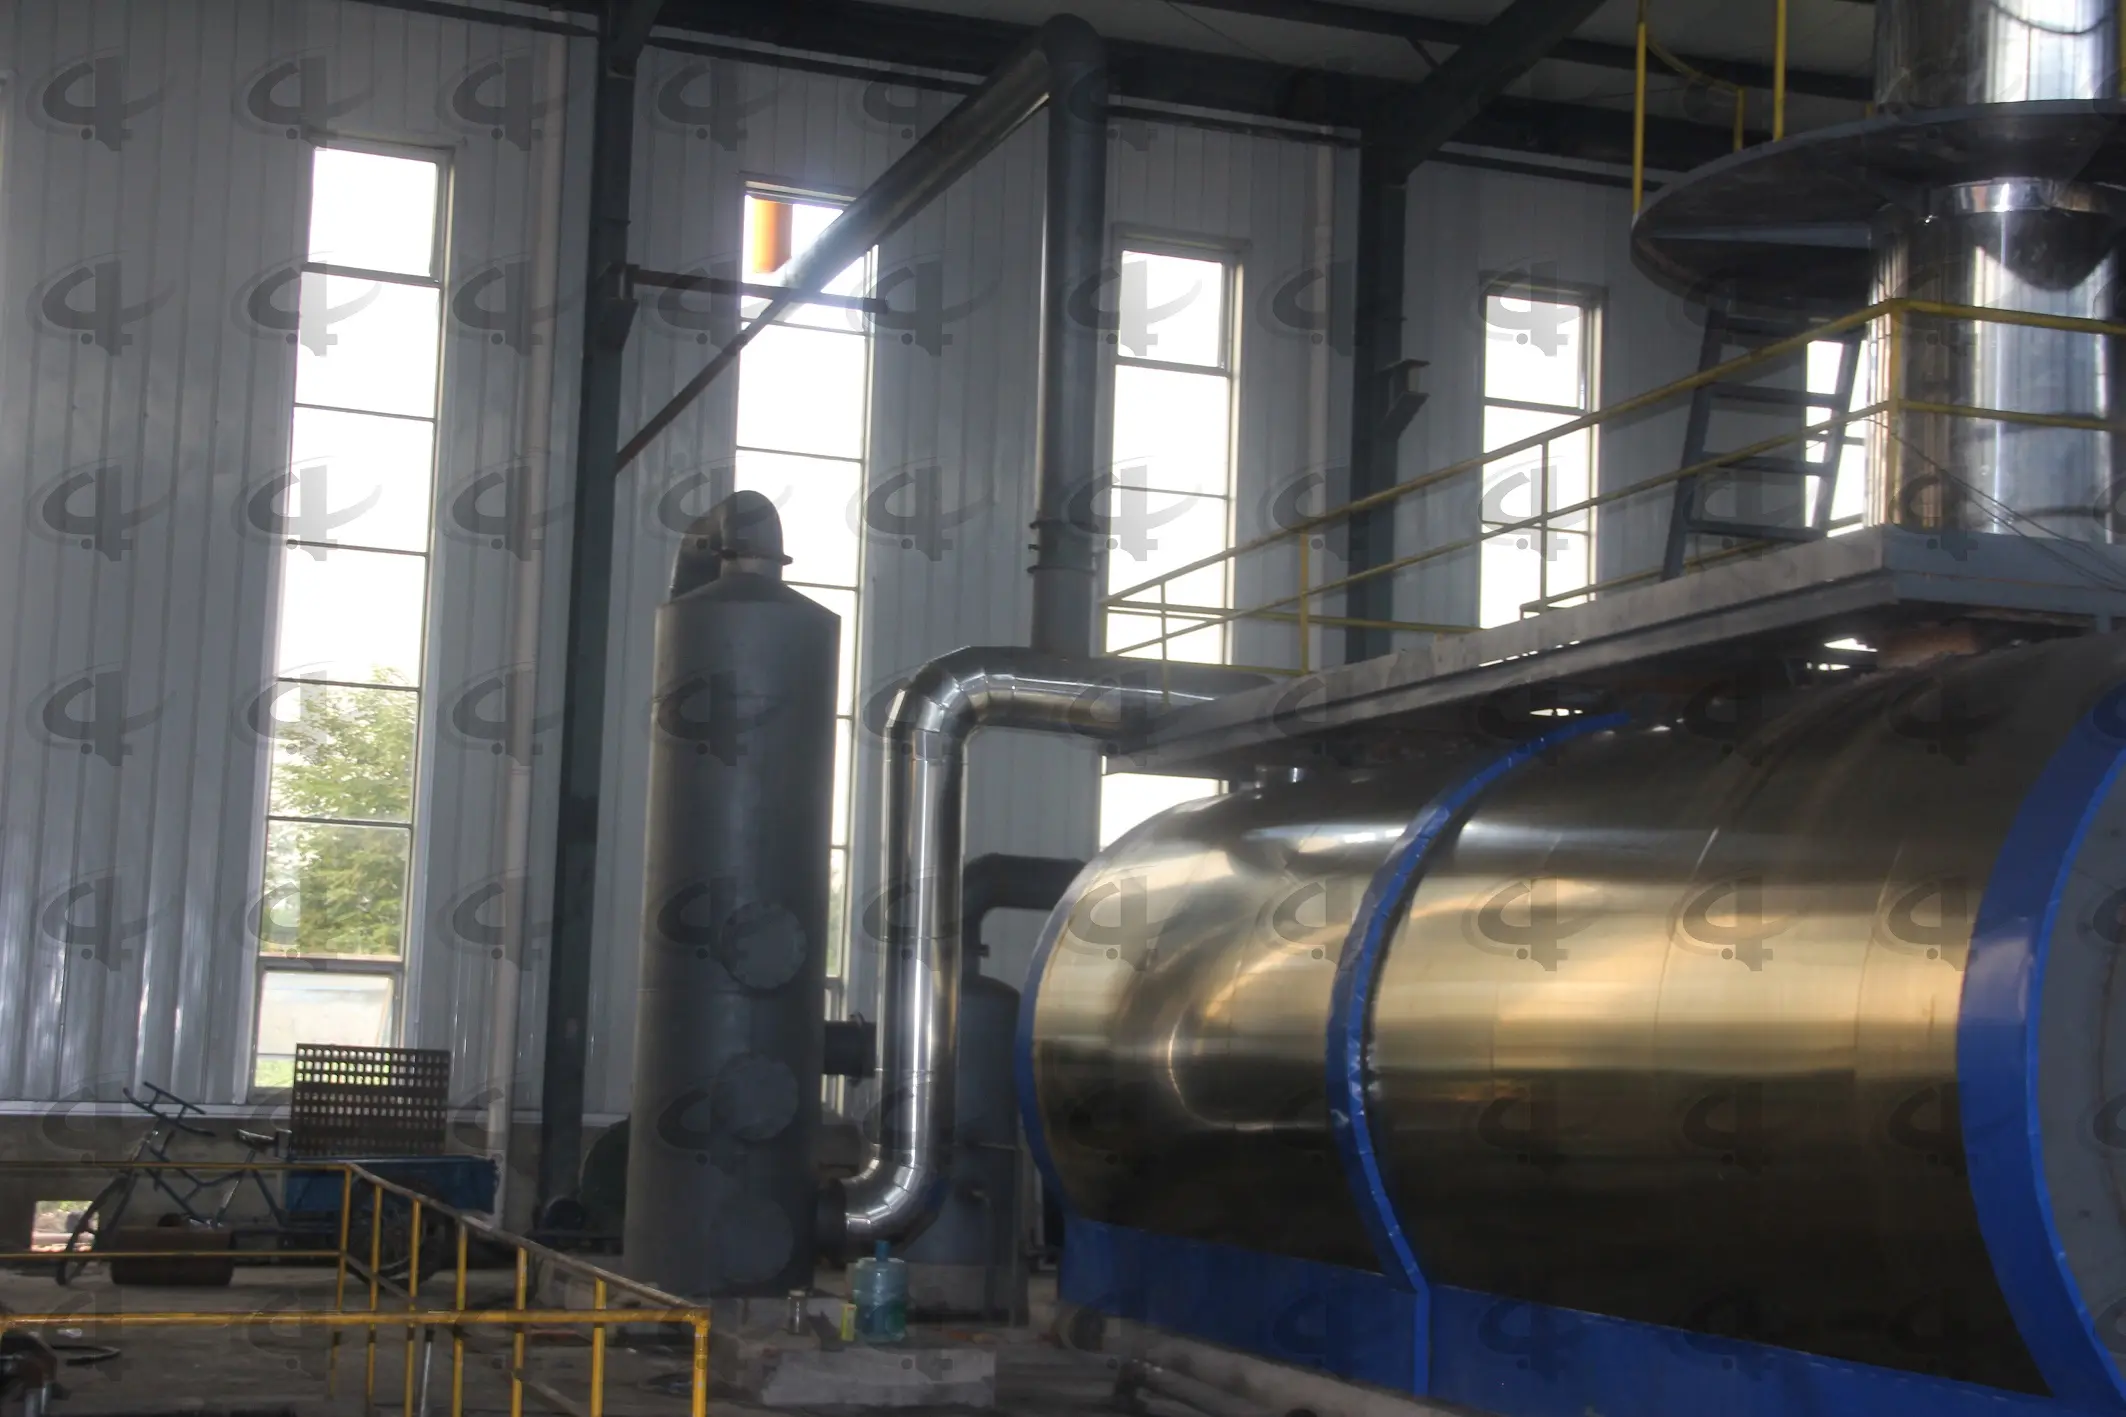 Raffineria di petrolio greggio impianti rifiuti olio usato macchina di riciclaggio olio di pirolisi impianto di distillazione diesel